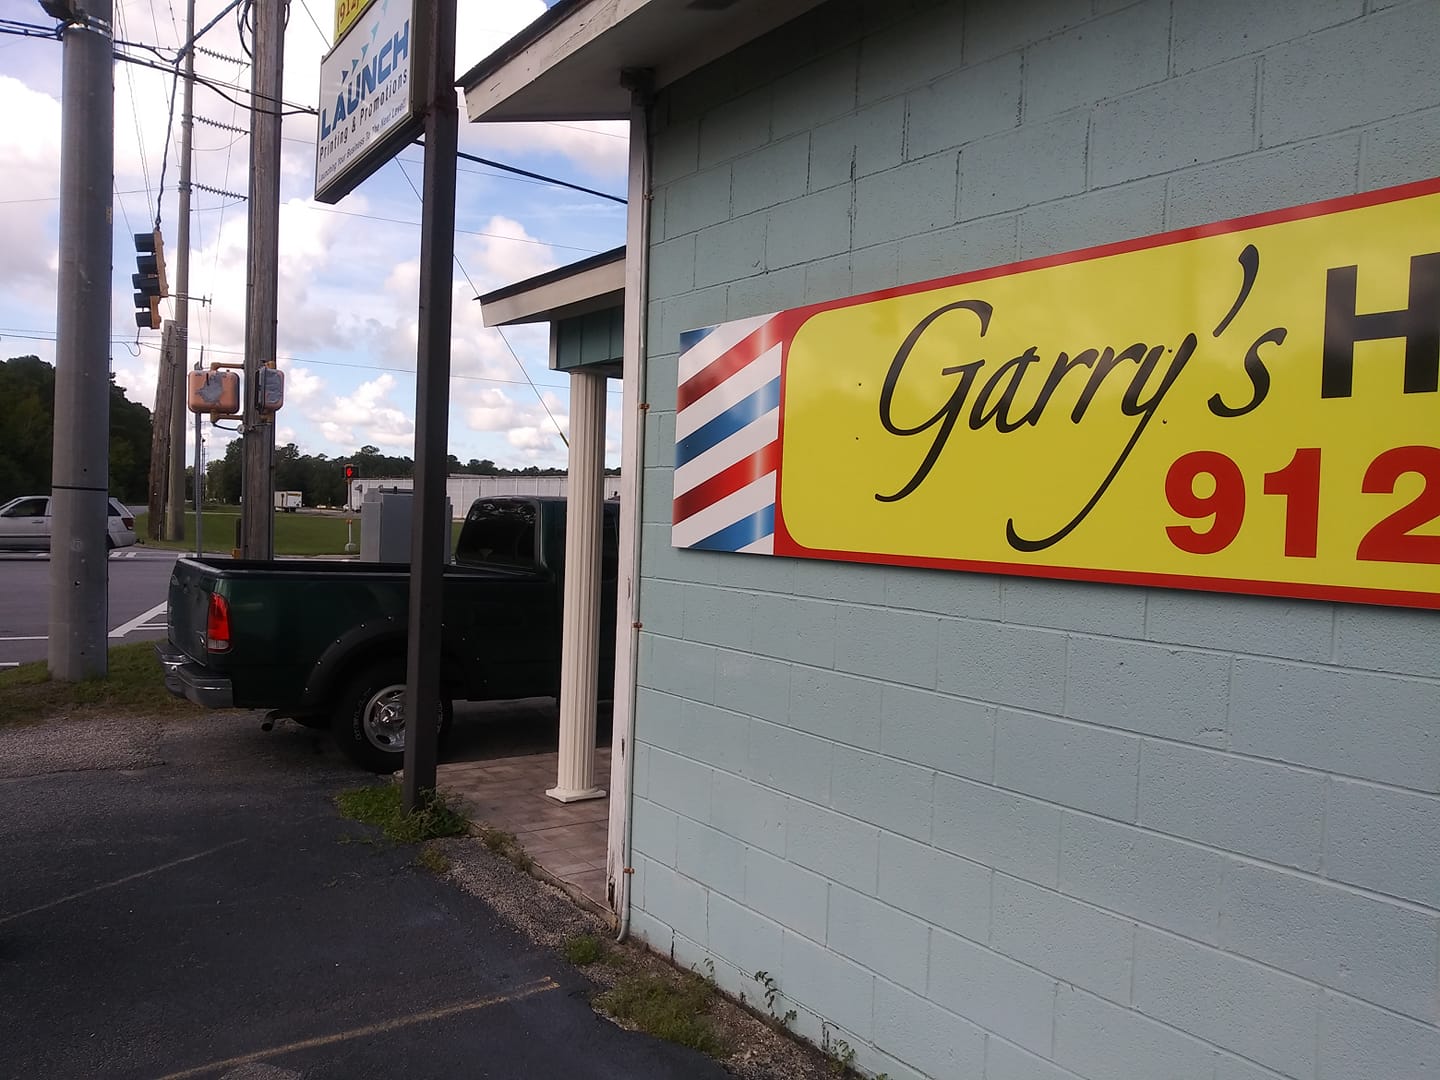 Garrys Hair Salon